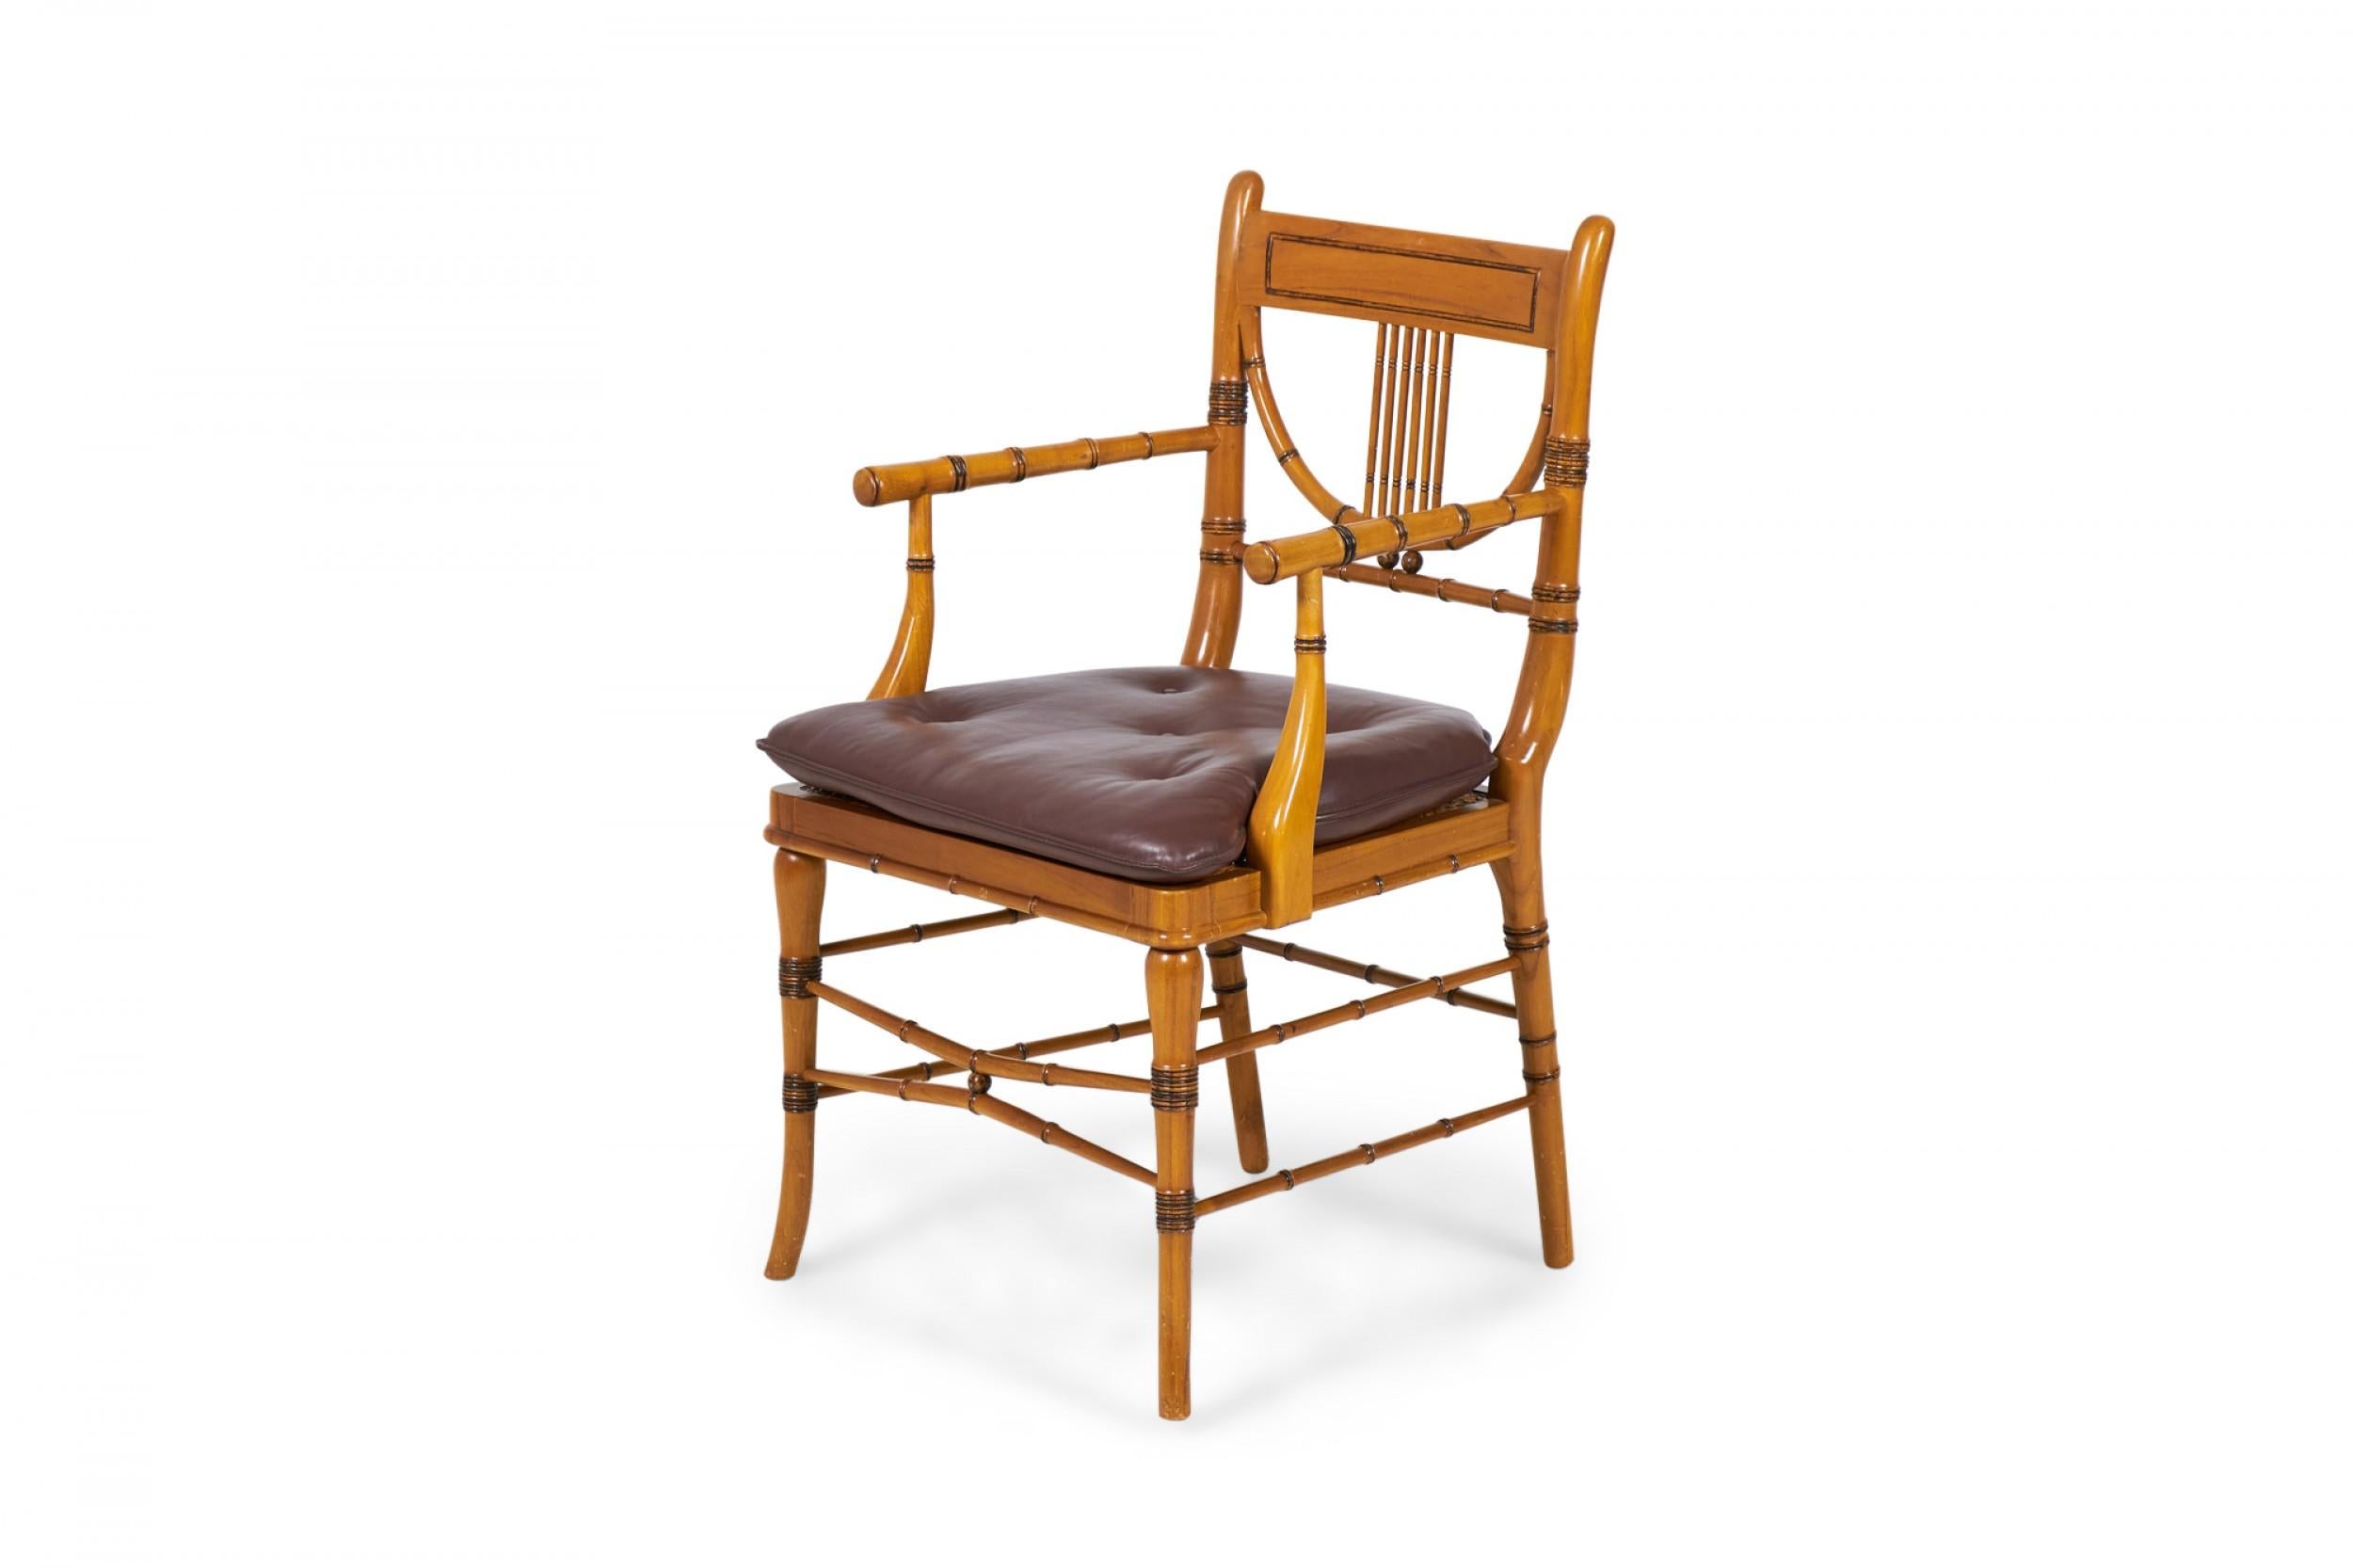 Zwei englische Sessel im Regency-Stil (Ende des 20. Jahrhunderts) aus Bambusimitat mit gedrechselten Ahornrahmen, bestehend aus einer rechteckigen Rückenlehne, die durch vertikale Latten mit einem halbkreisförmigen Rückenteil verbunden ist, und